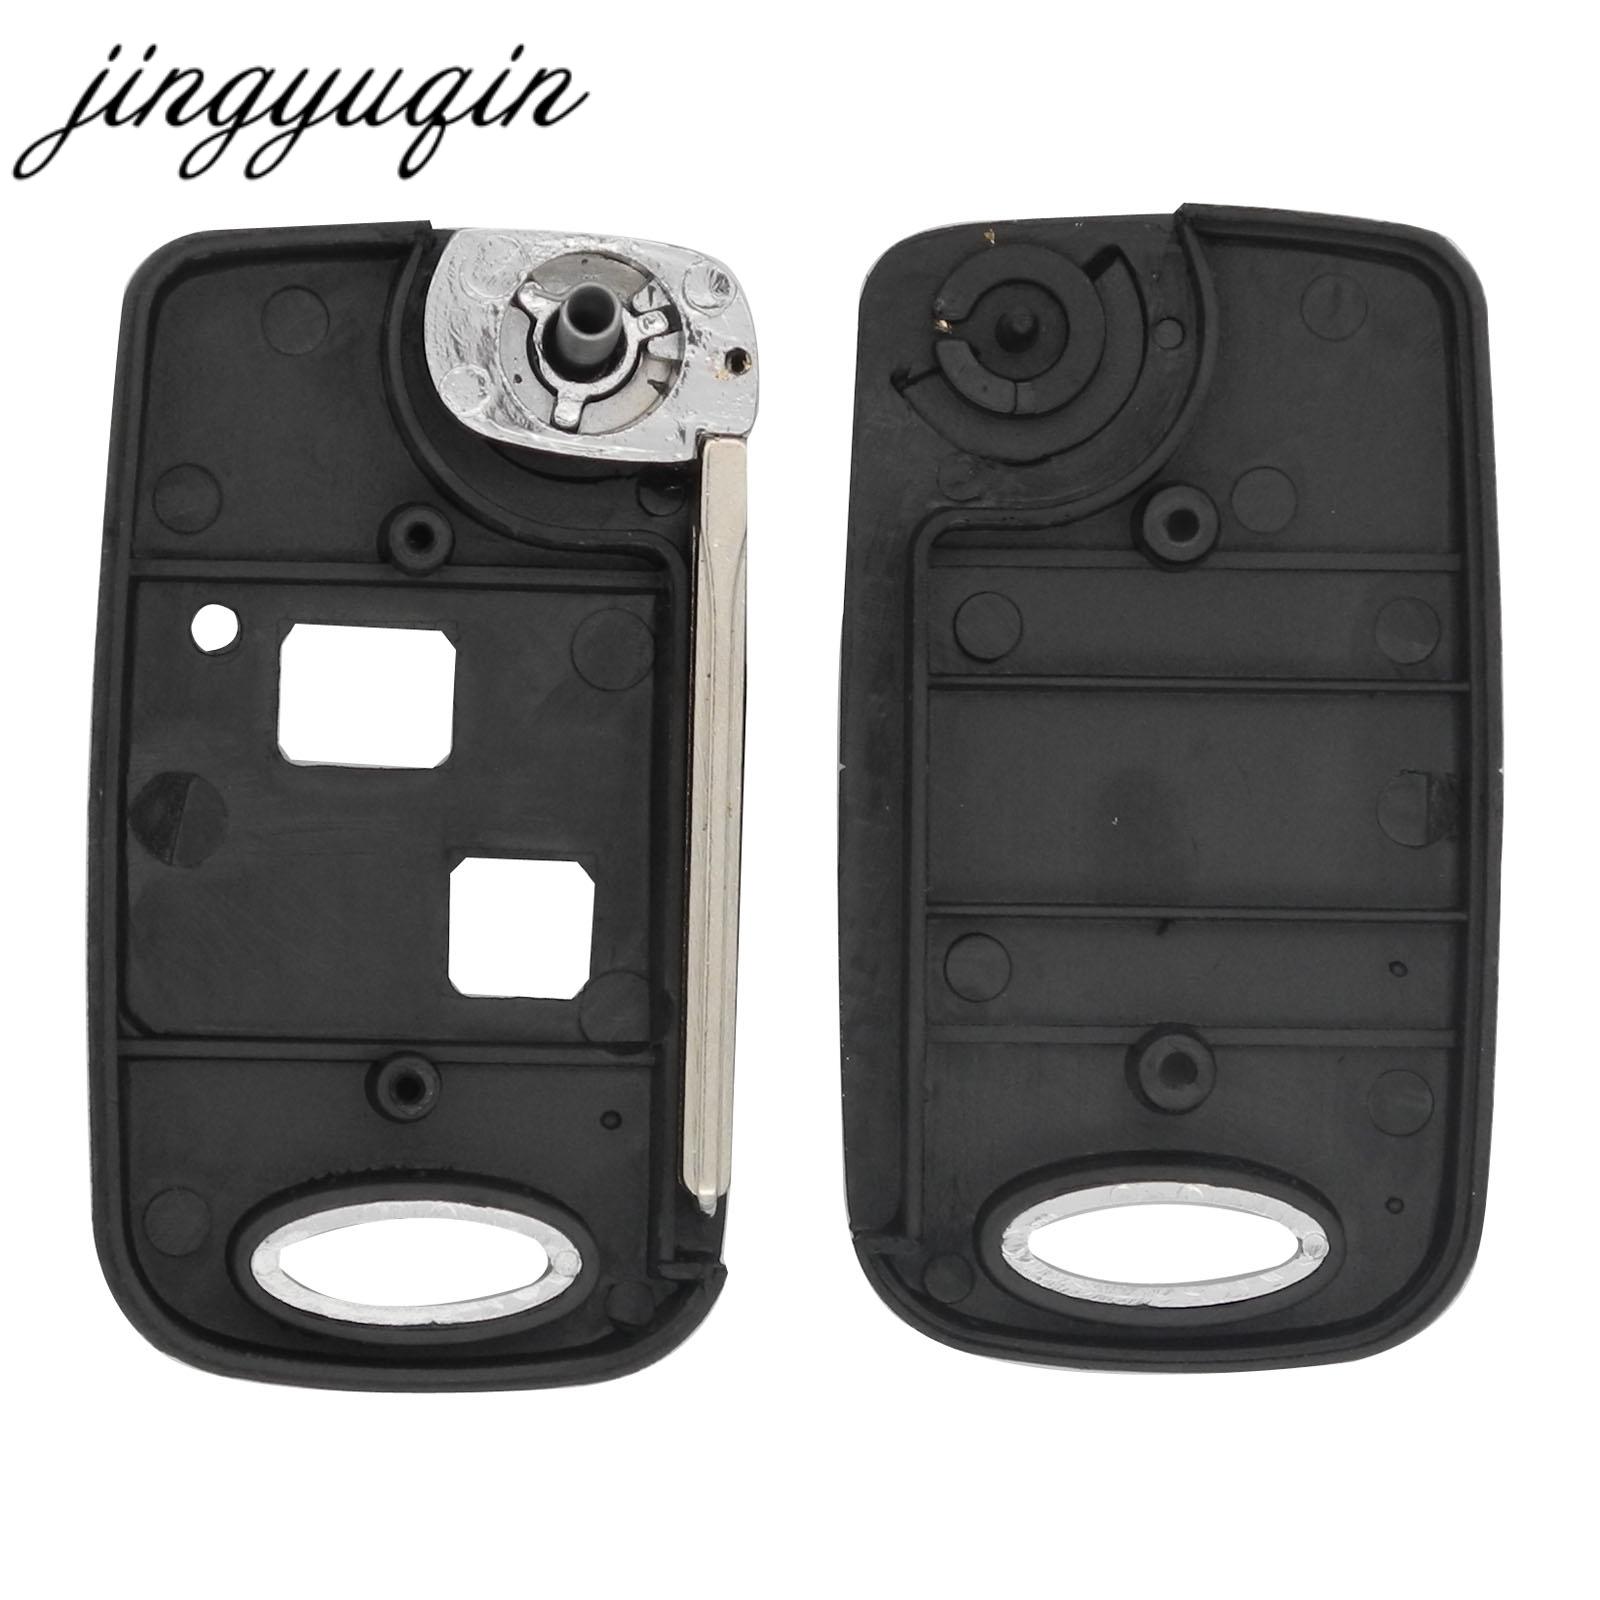 Изображение товара: Jingyuqin 2 кнопки дистанционного брелока модифицированный флип-чехол для ключей для Lexus CX470 RX350 ES300 RX300 RX400 SC GS LS Cut/Uncut чехол для ключей